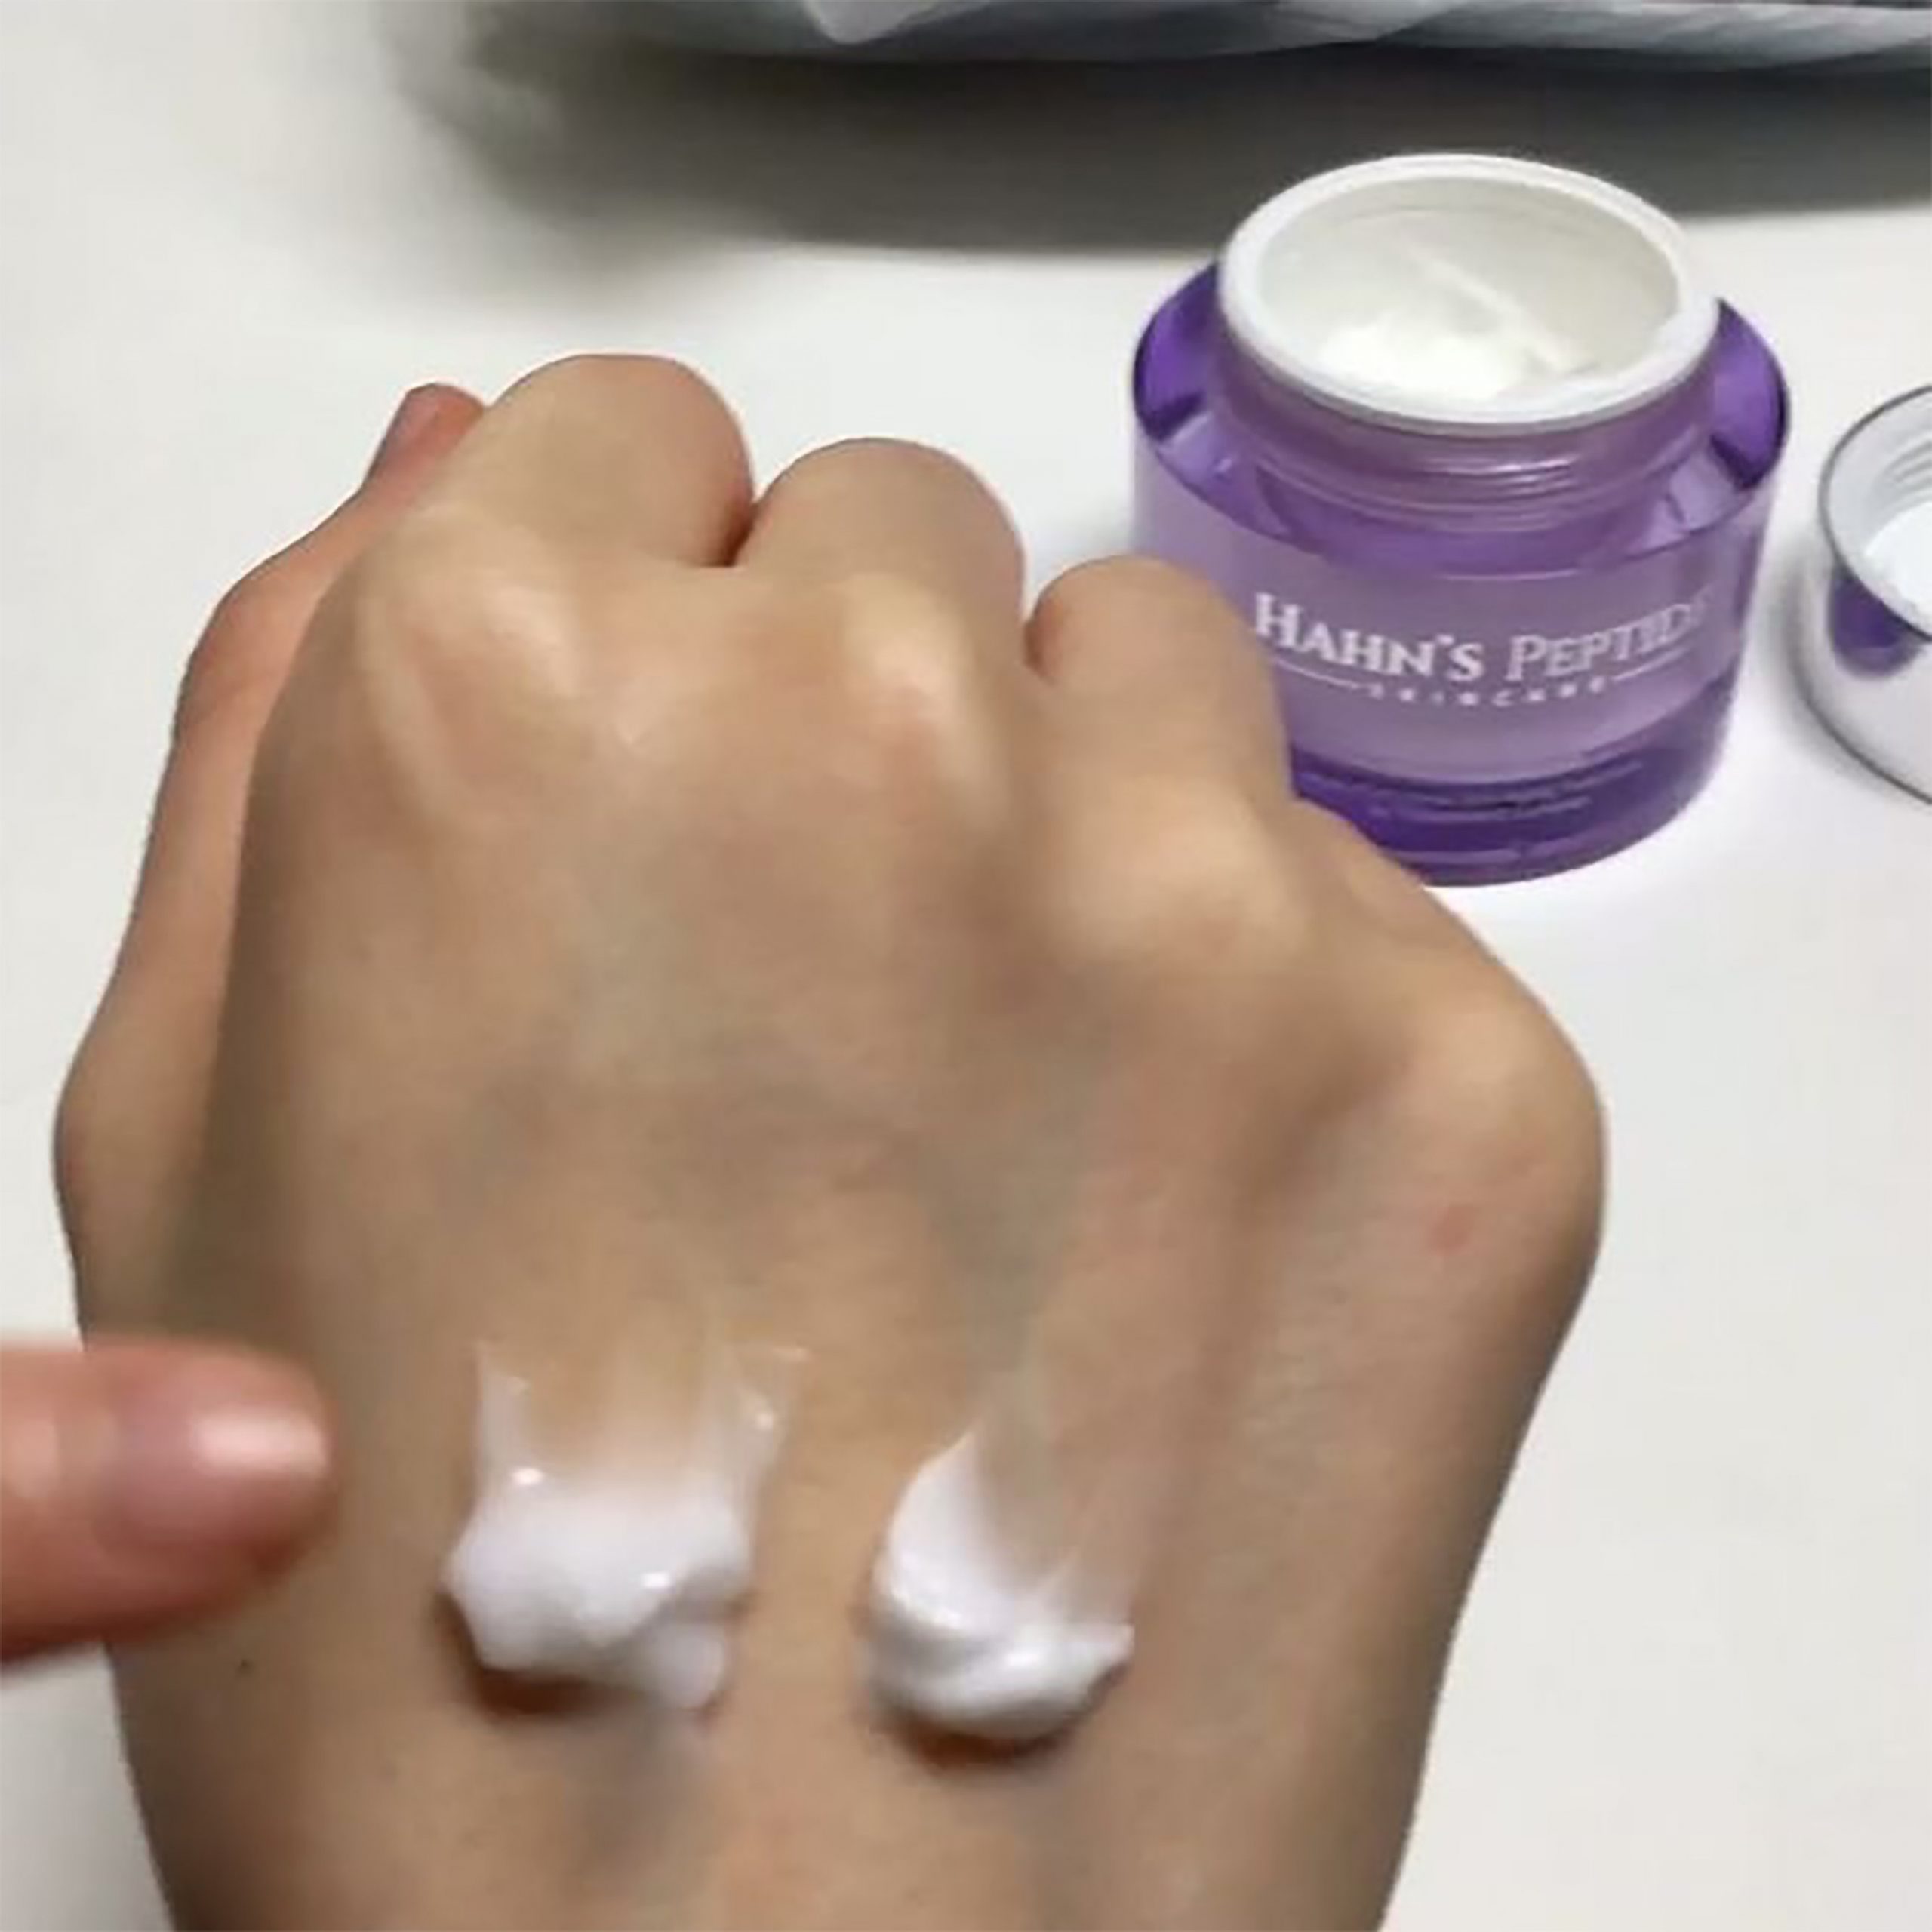 hahns peptide tím skin care chính hãng Hàn Quốc 